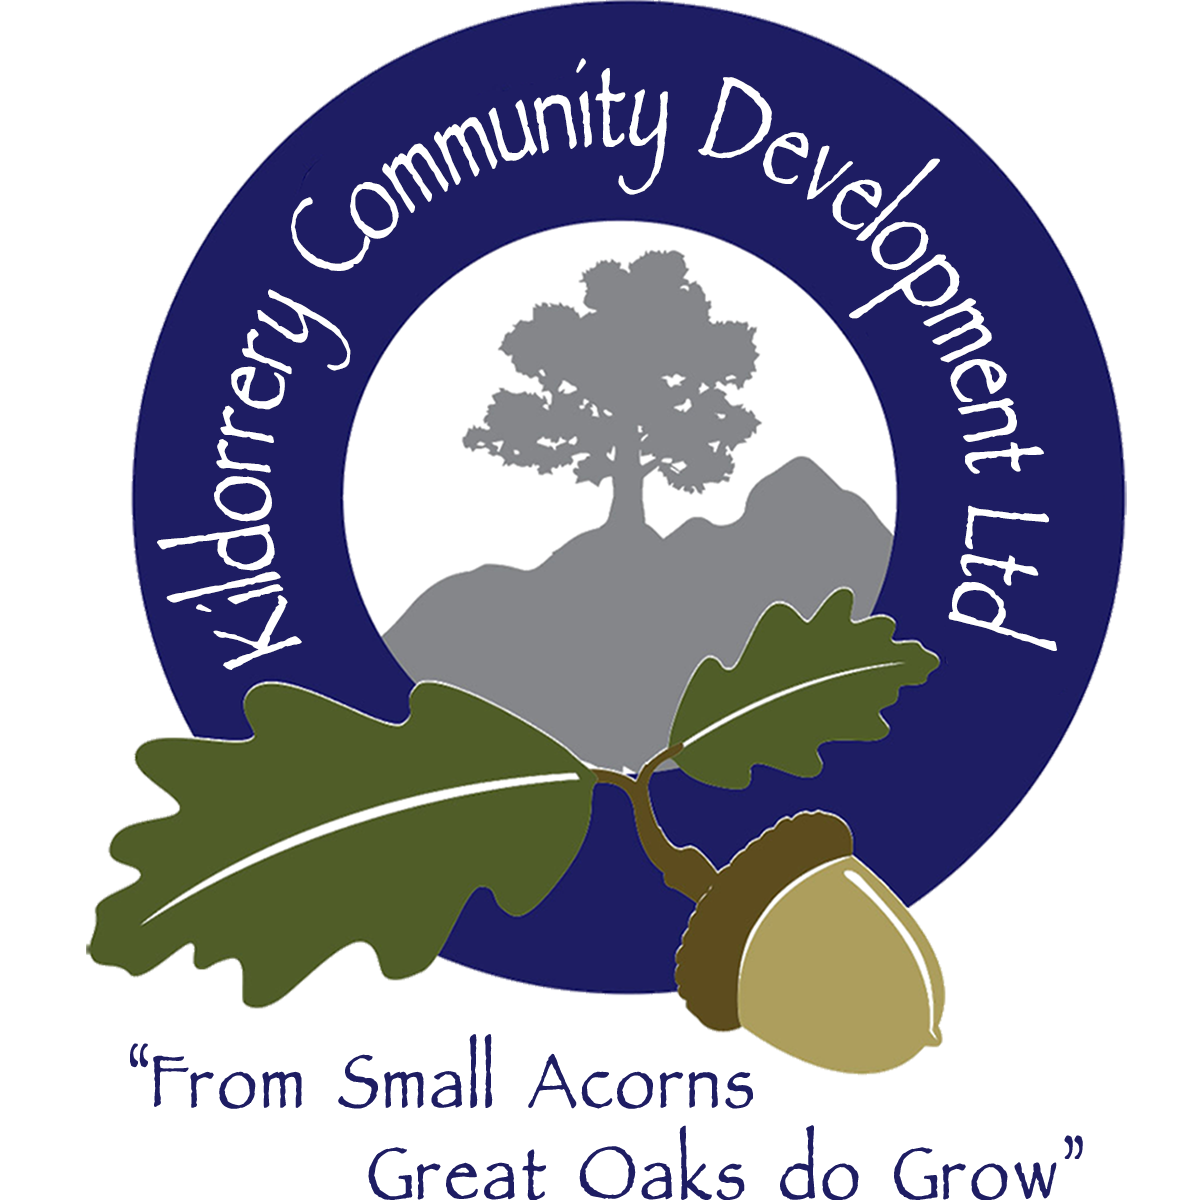 Kildorrery Community Development Ltd